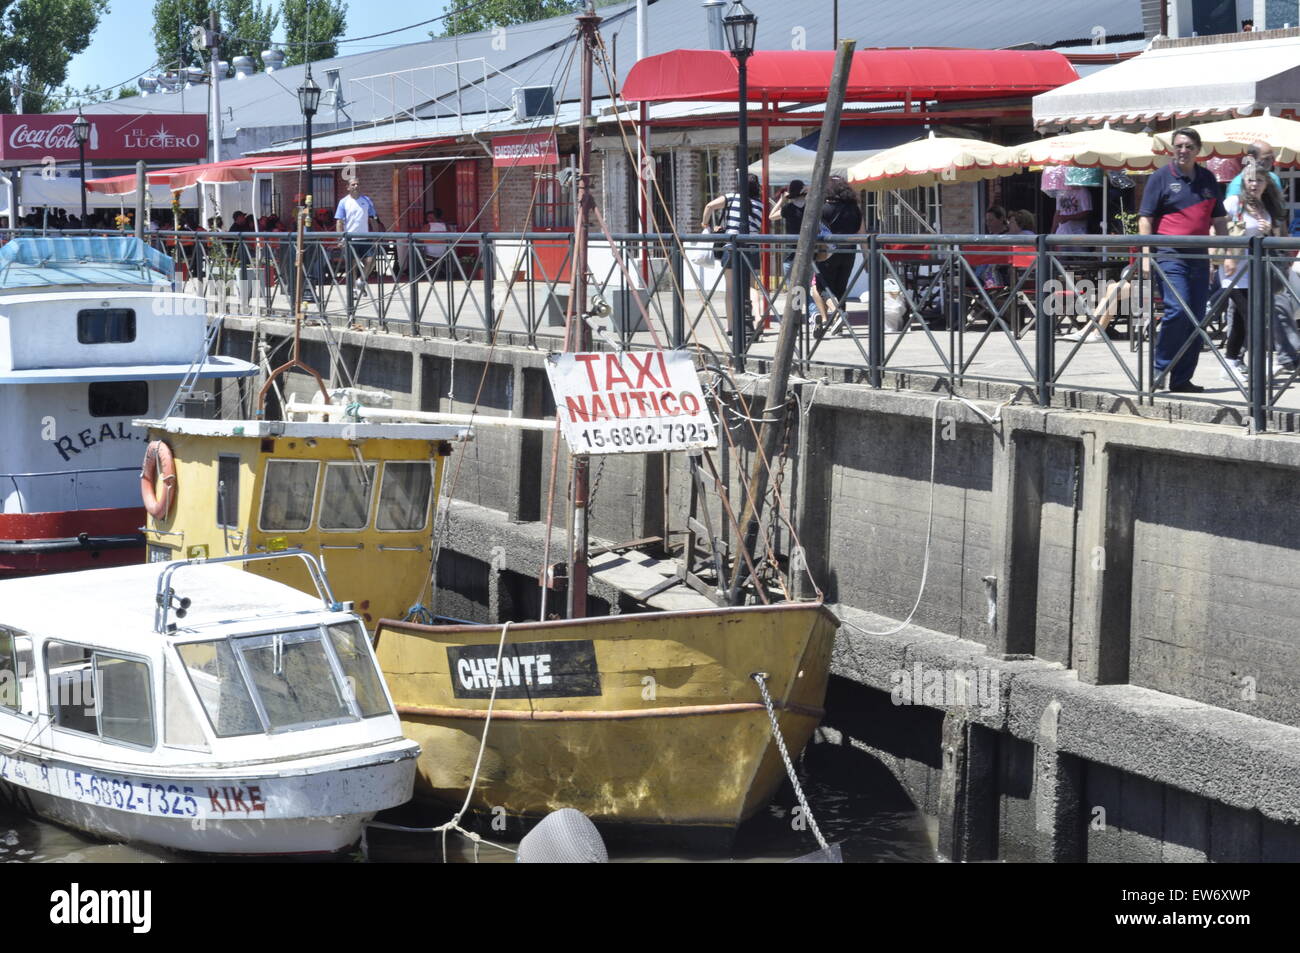 Taxi nautico barca nel fiume Plata, Argentina Foto Stock